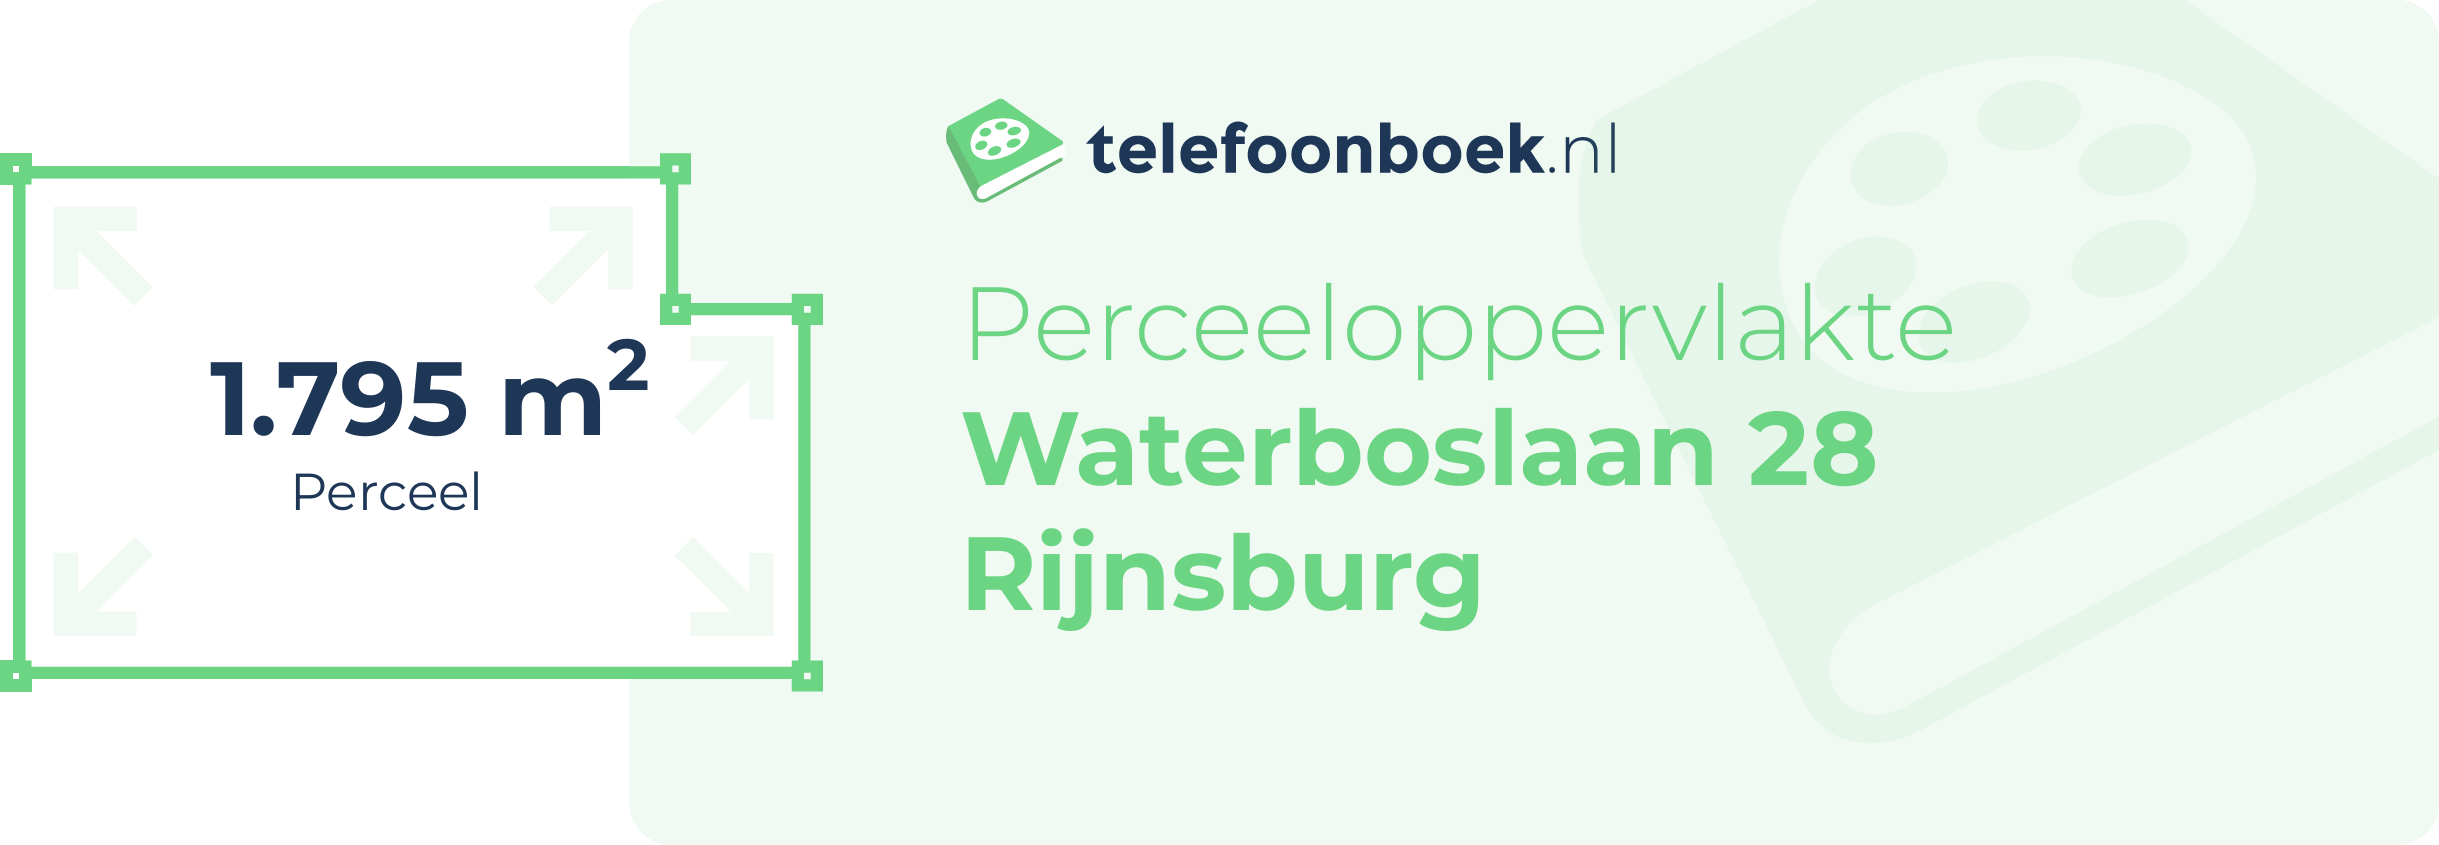 Perceeloppervlakte Waterboslaan 28 Rijnsburg